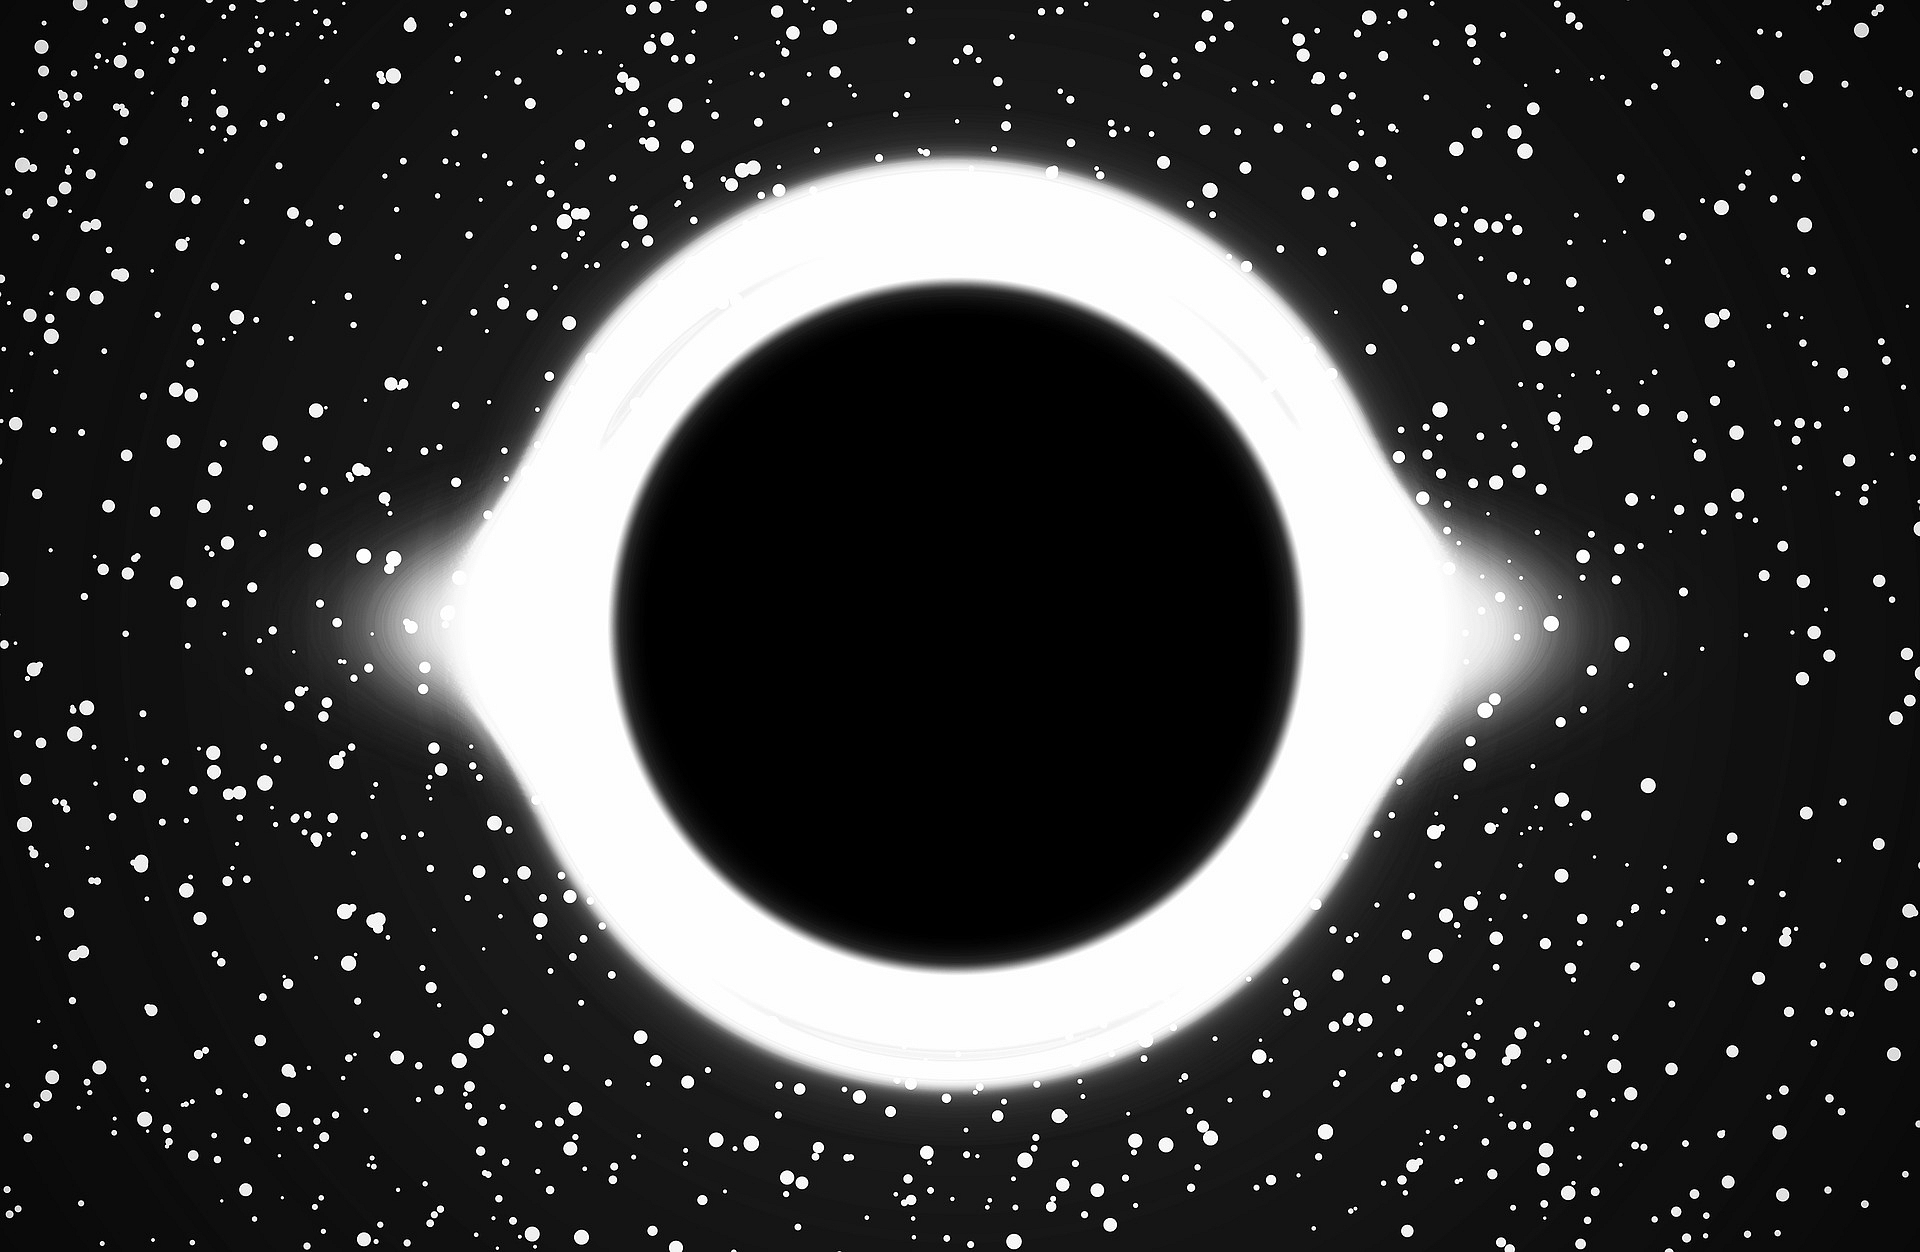 A black hole 